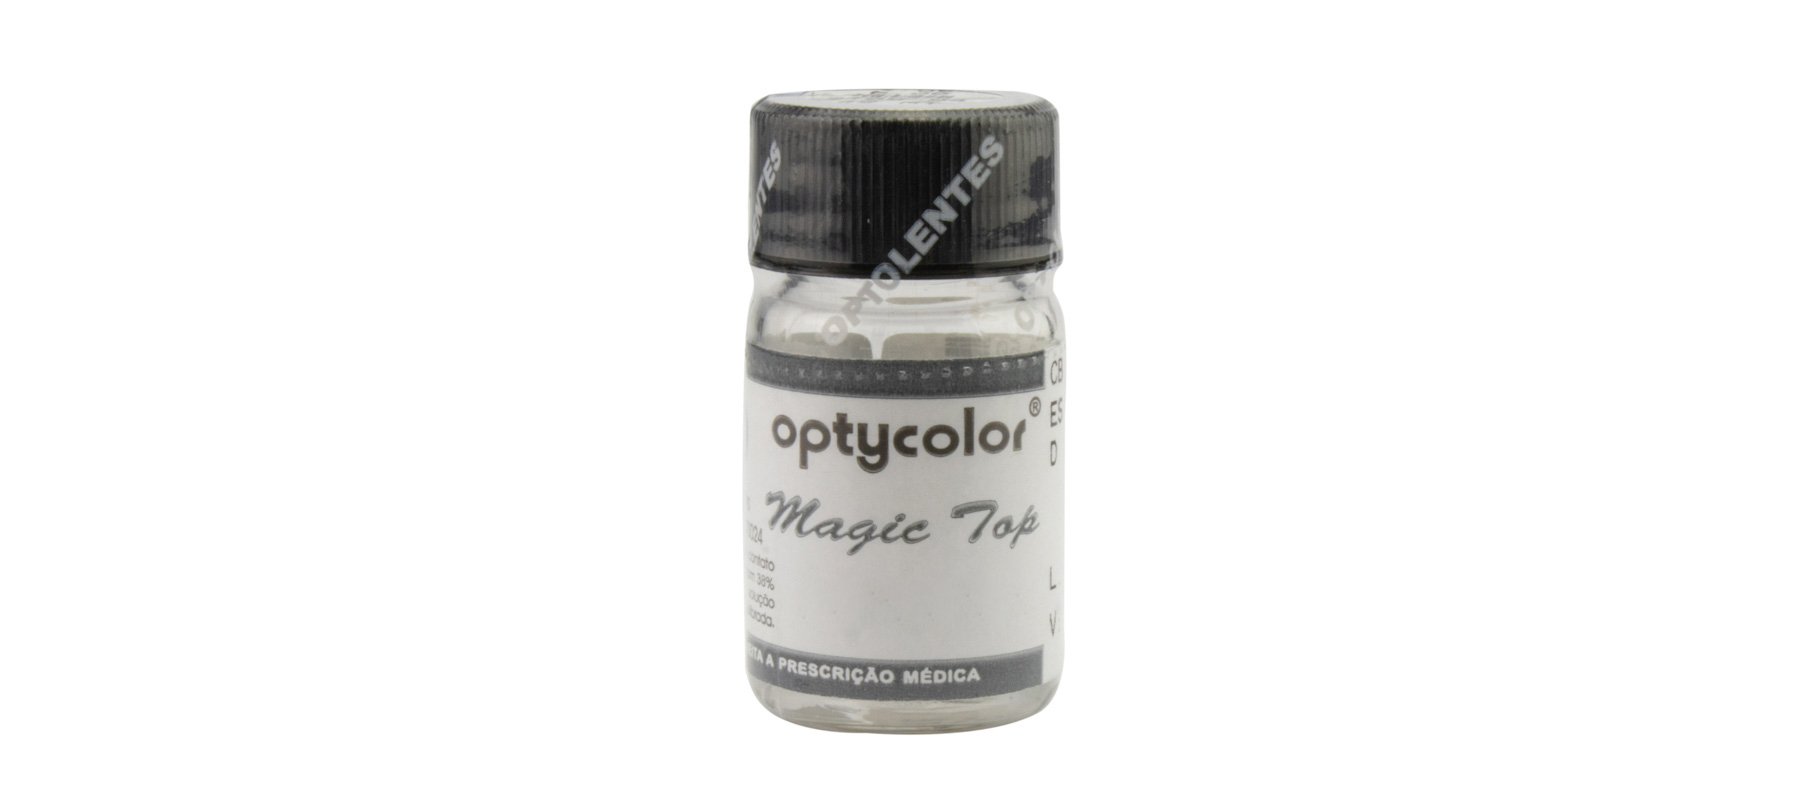 Lentes de Contato - Optycolor Magic Top - Lentes de Contato